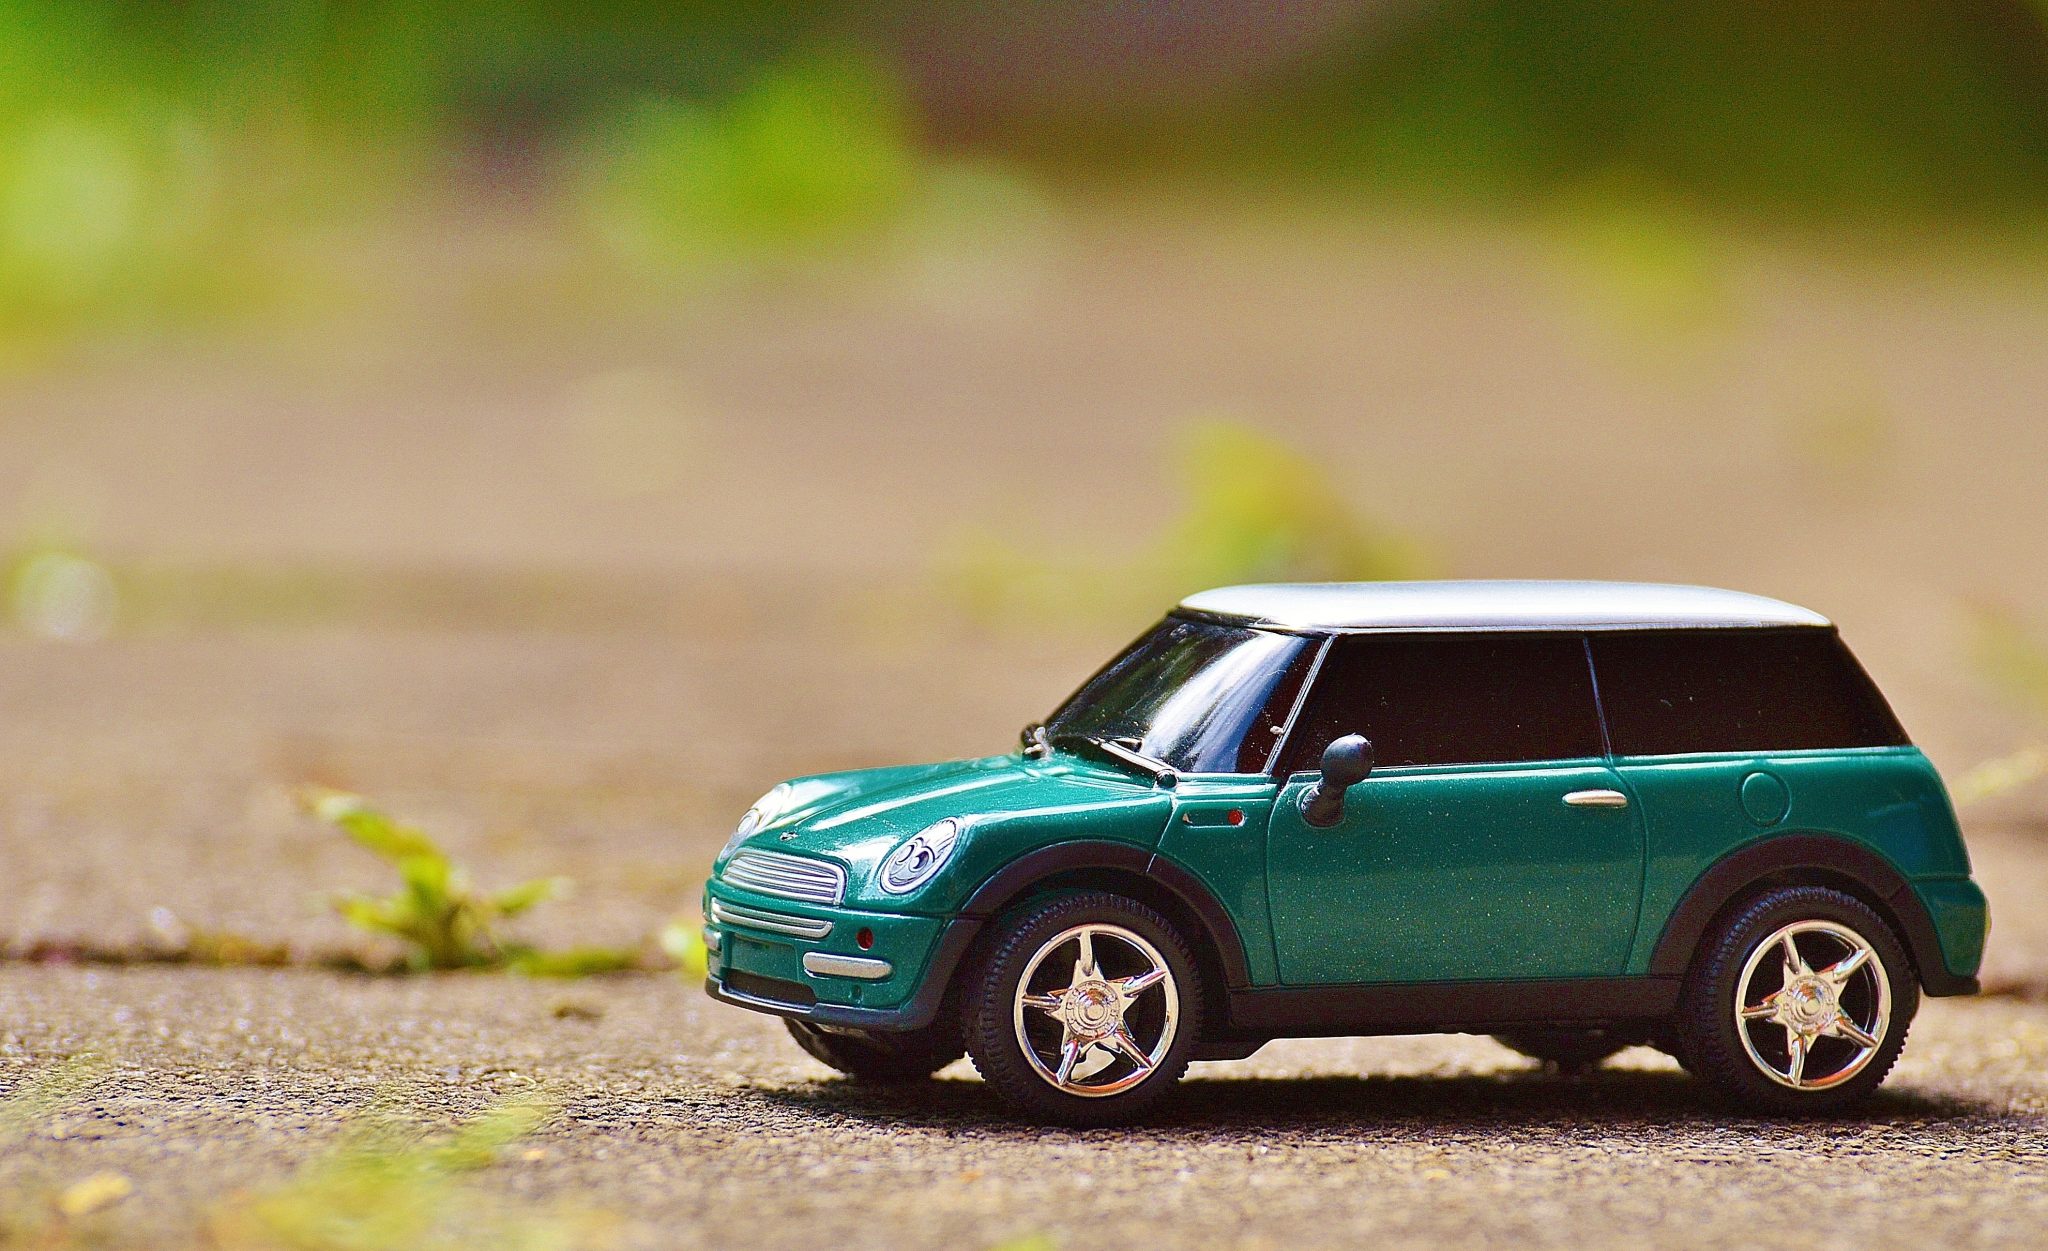 Customizing Toy car mini Car Finance